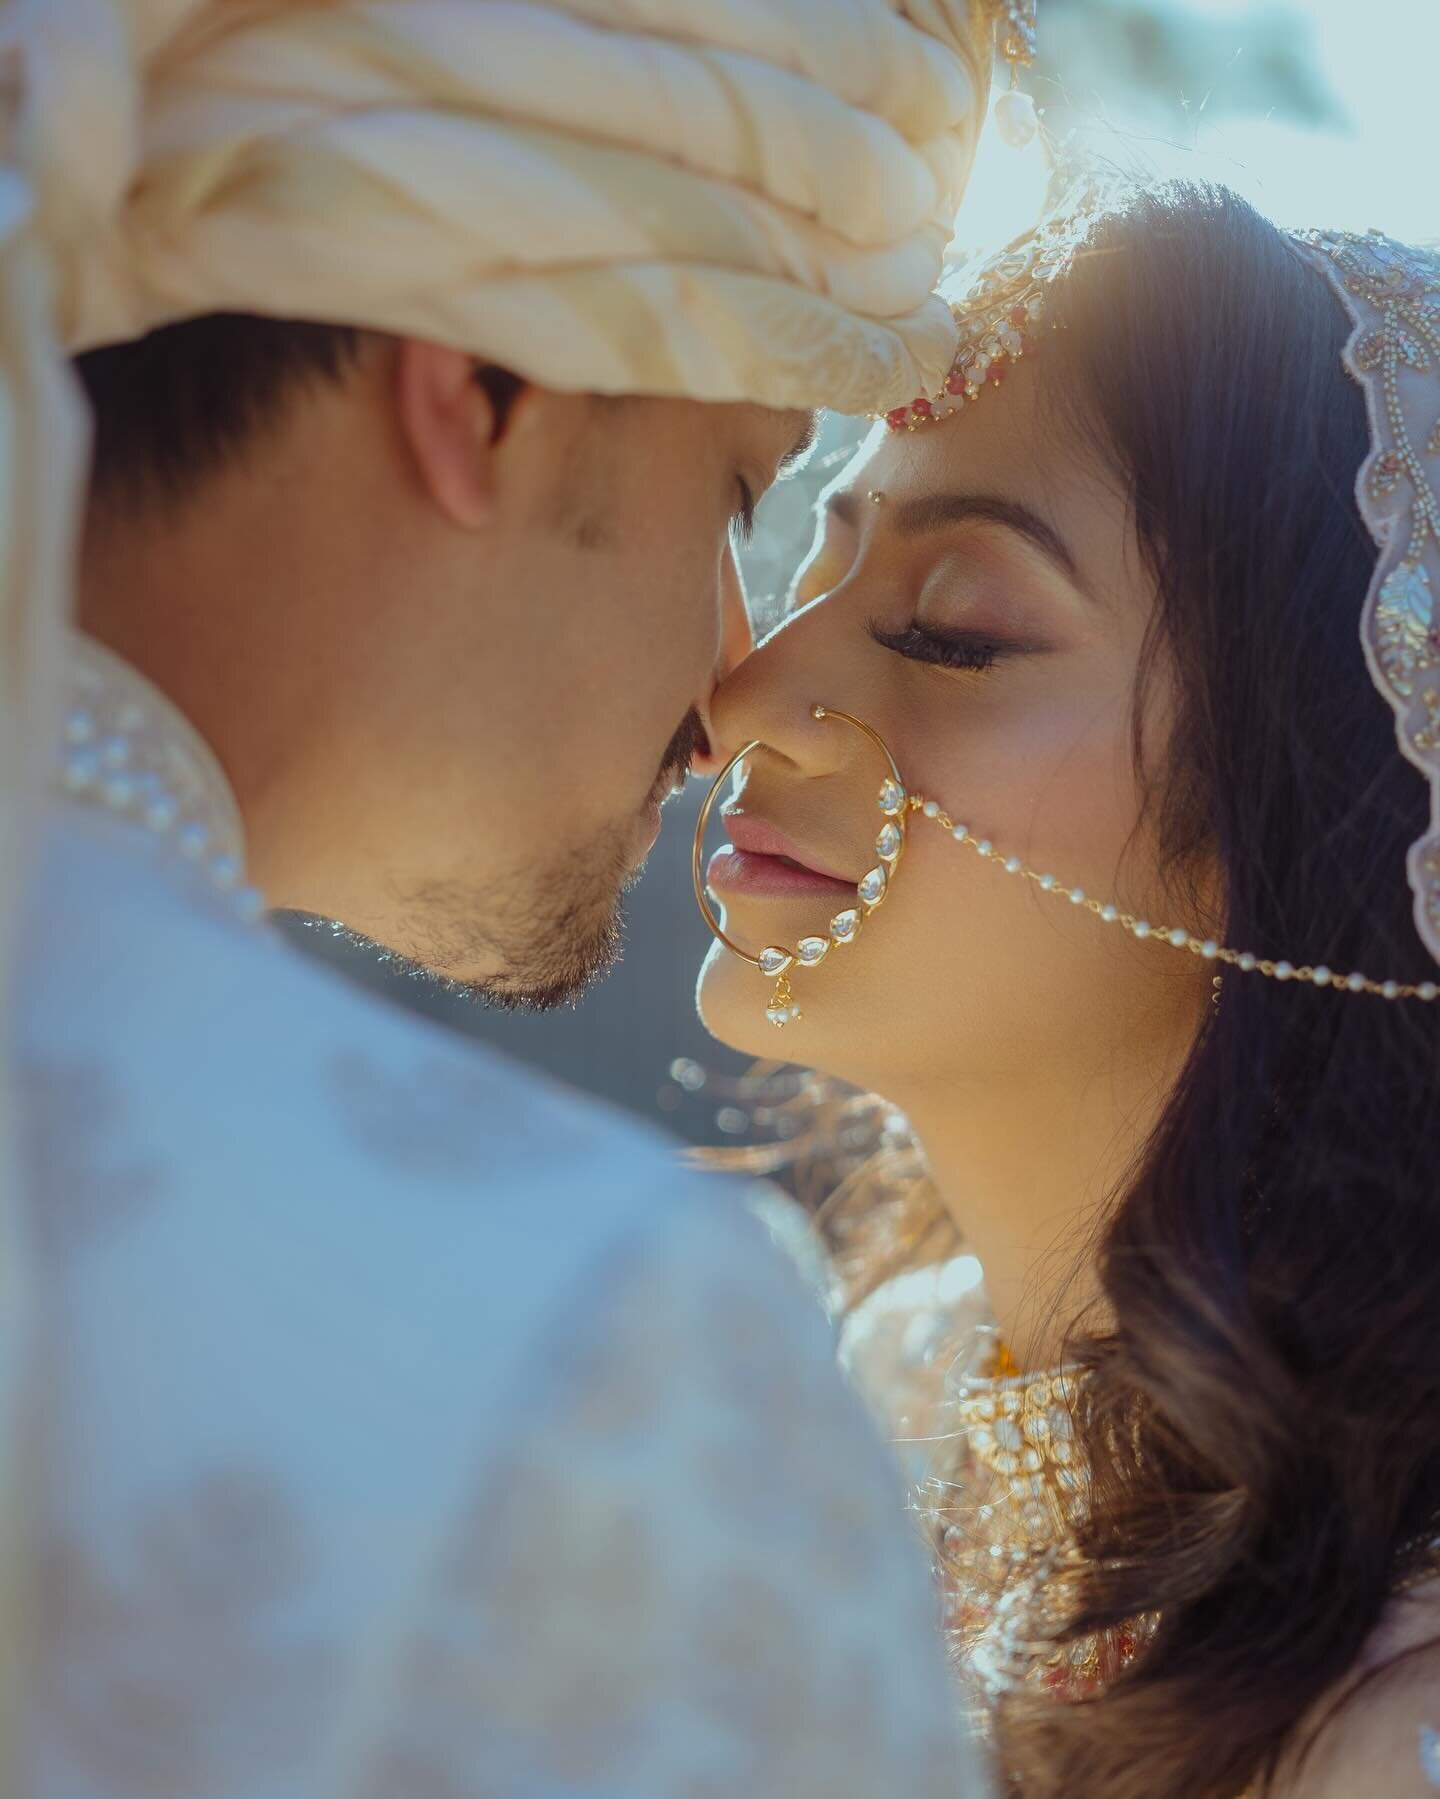 Tanya + Siddhant 🤍

#wedding #weddingday #indianbride #southasianwedding #indianwedding #weddingphotography #weddinginspiration #weddingphotographer #bayareaweddingphotographer #sanfranciscoweddingphotographer #indianweddingphotographer #weddingplan